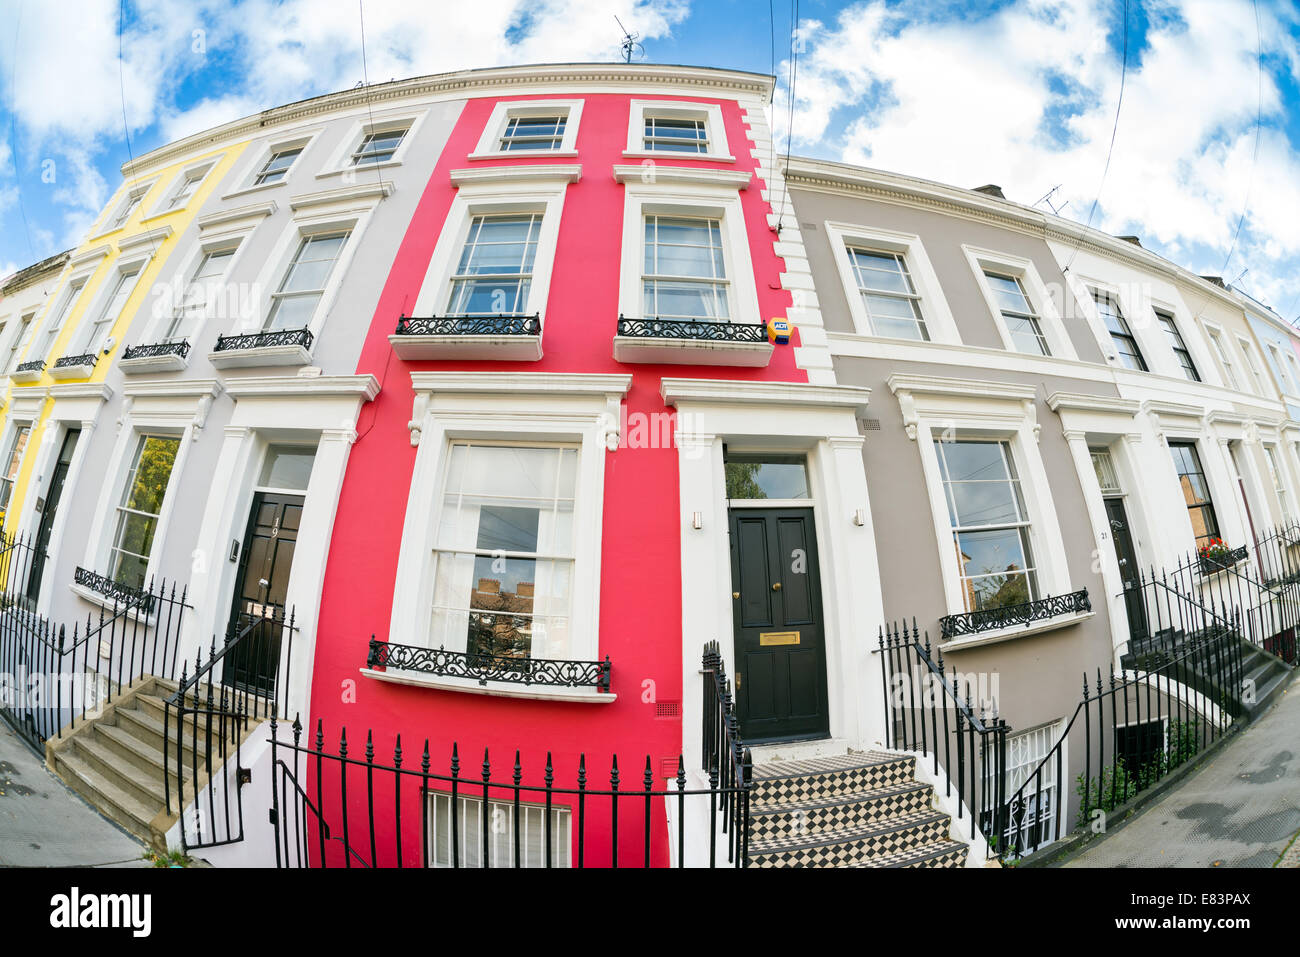 Fila di case a schiera a Notting Hill, Londra, Inghilterra, Regno Unito Foto Stock